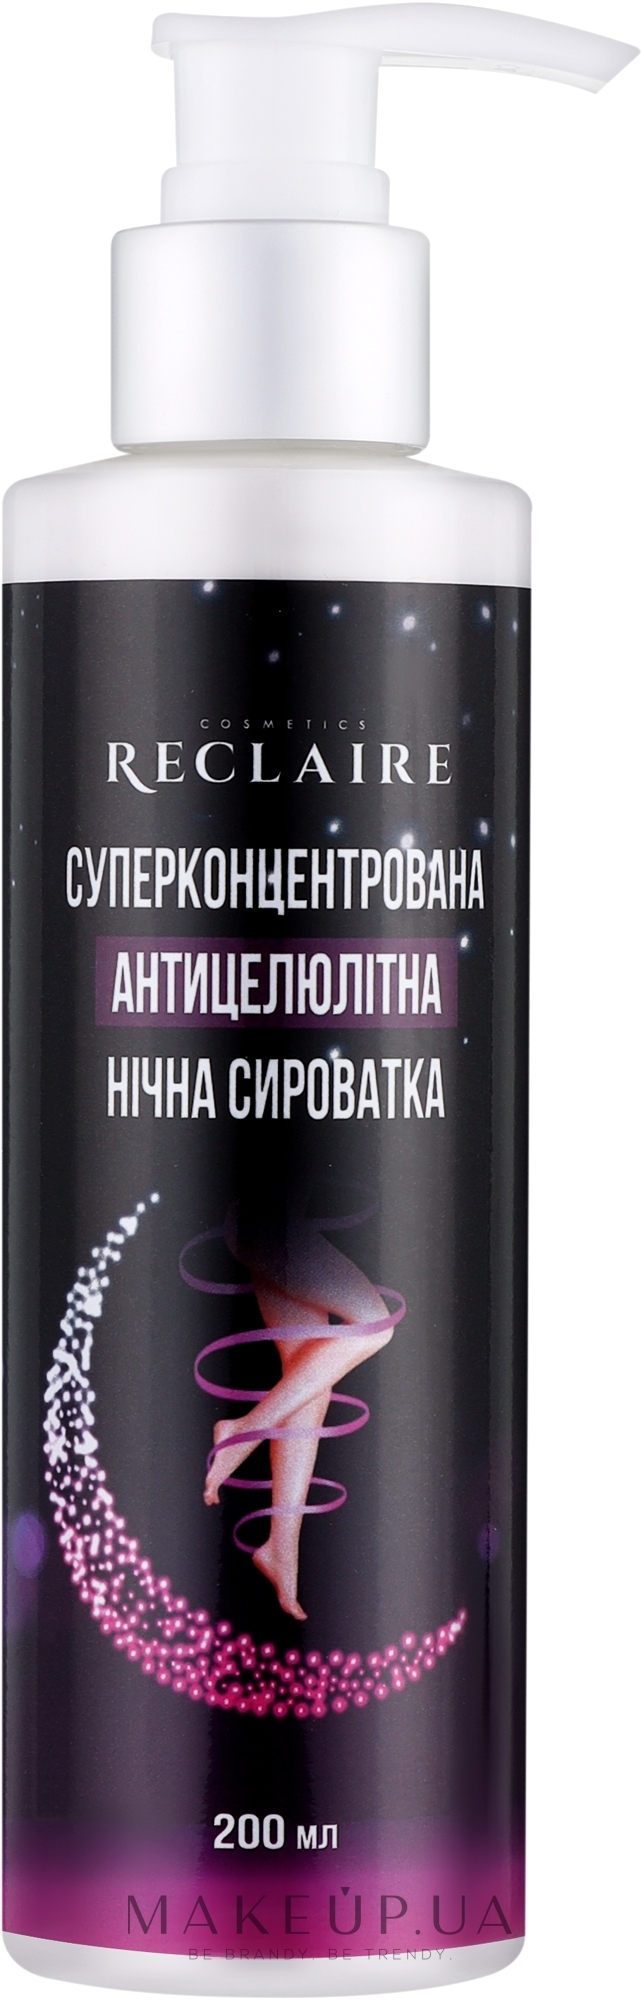 Суперконцентрированная антицеллюлитная ночная сыворотка - Reclaire Cosmetics — фото 200ml